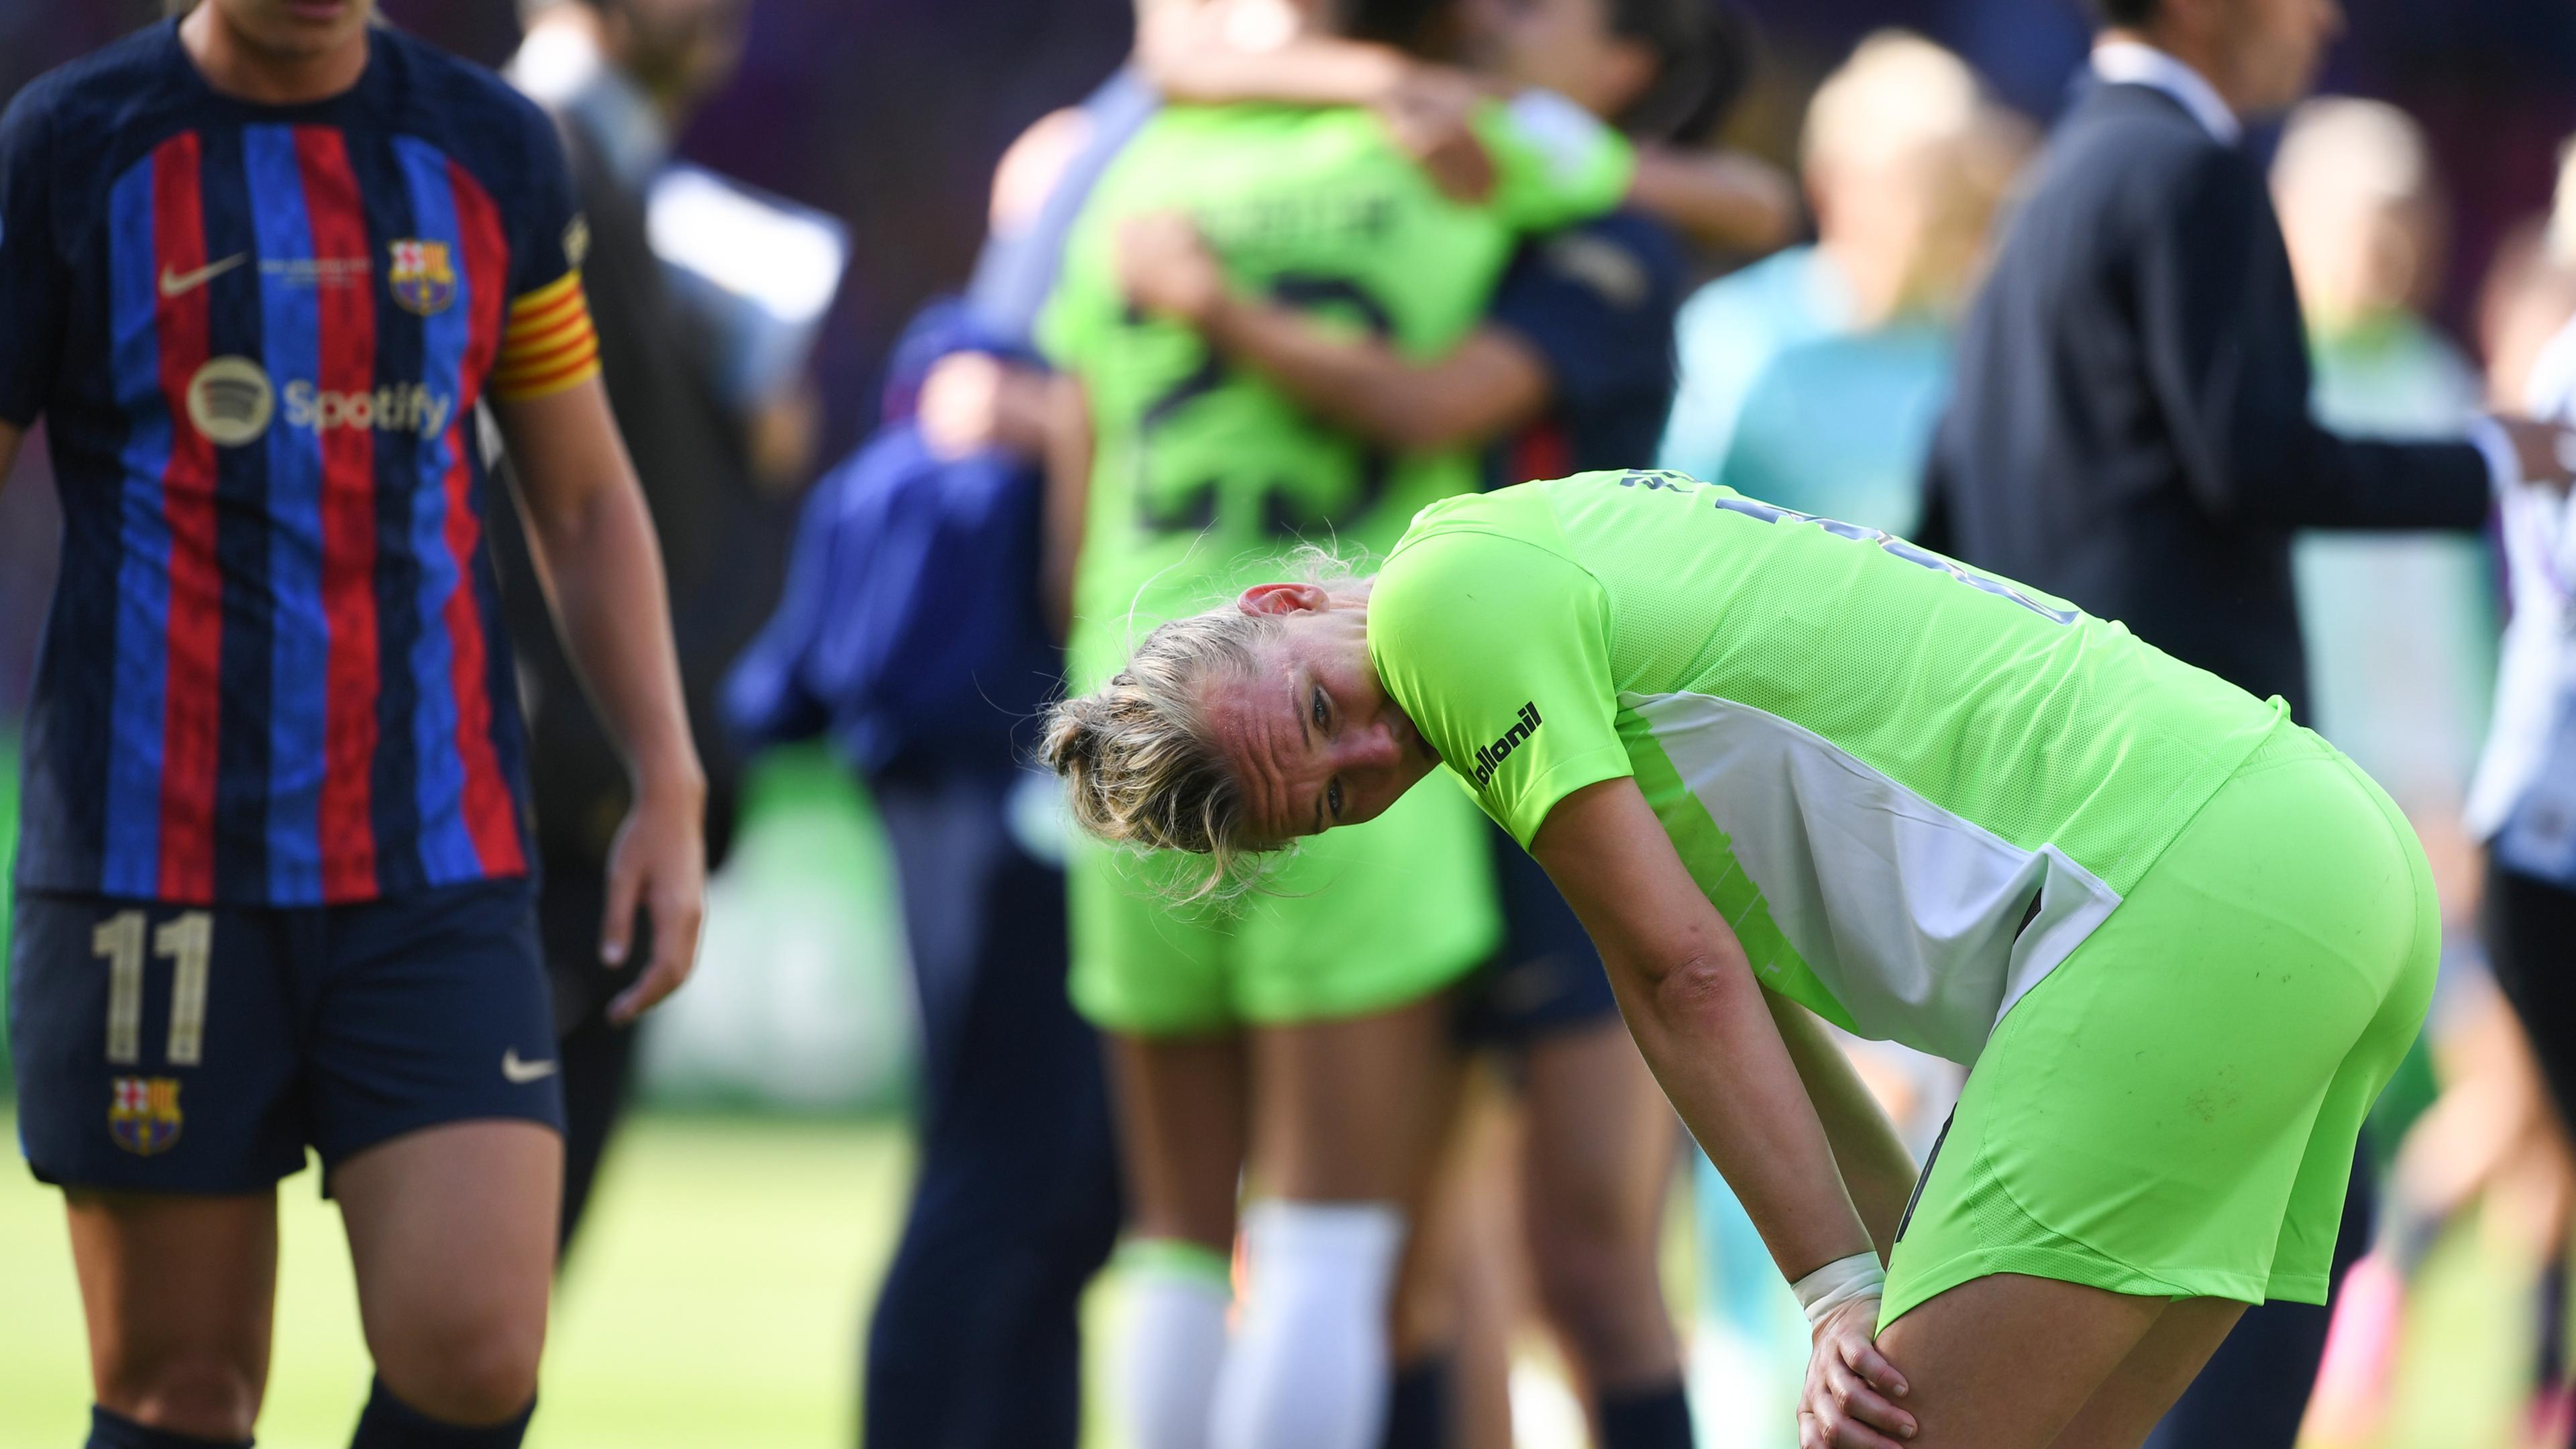 Niederlande, Eindhoven: Fußball, Frauen: Champions League, FC Barcelona - VfL Wolfsburg. Wolfsburgs Alexandra Popp steht nach dem Spiel auf dem Rasen und reagiert nach der Niederlage.